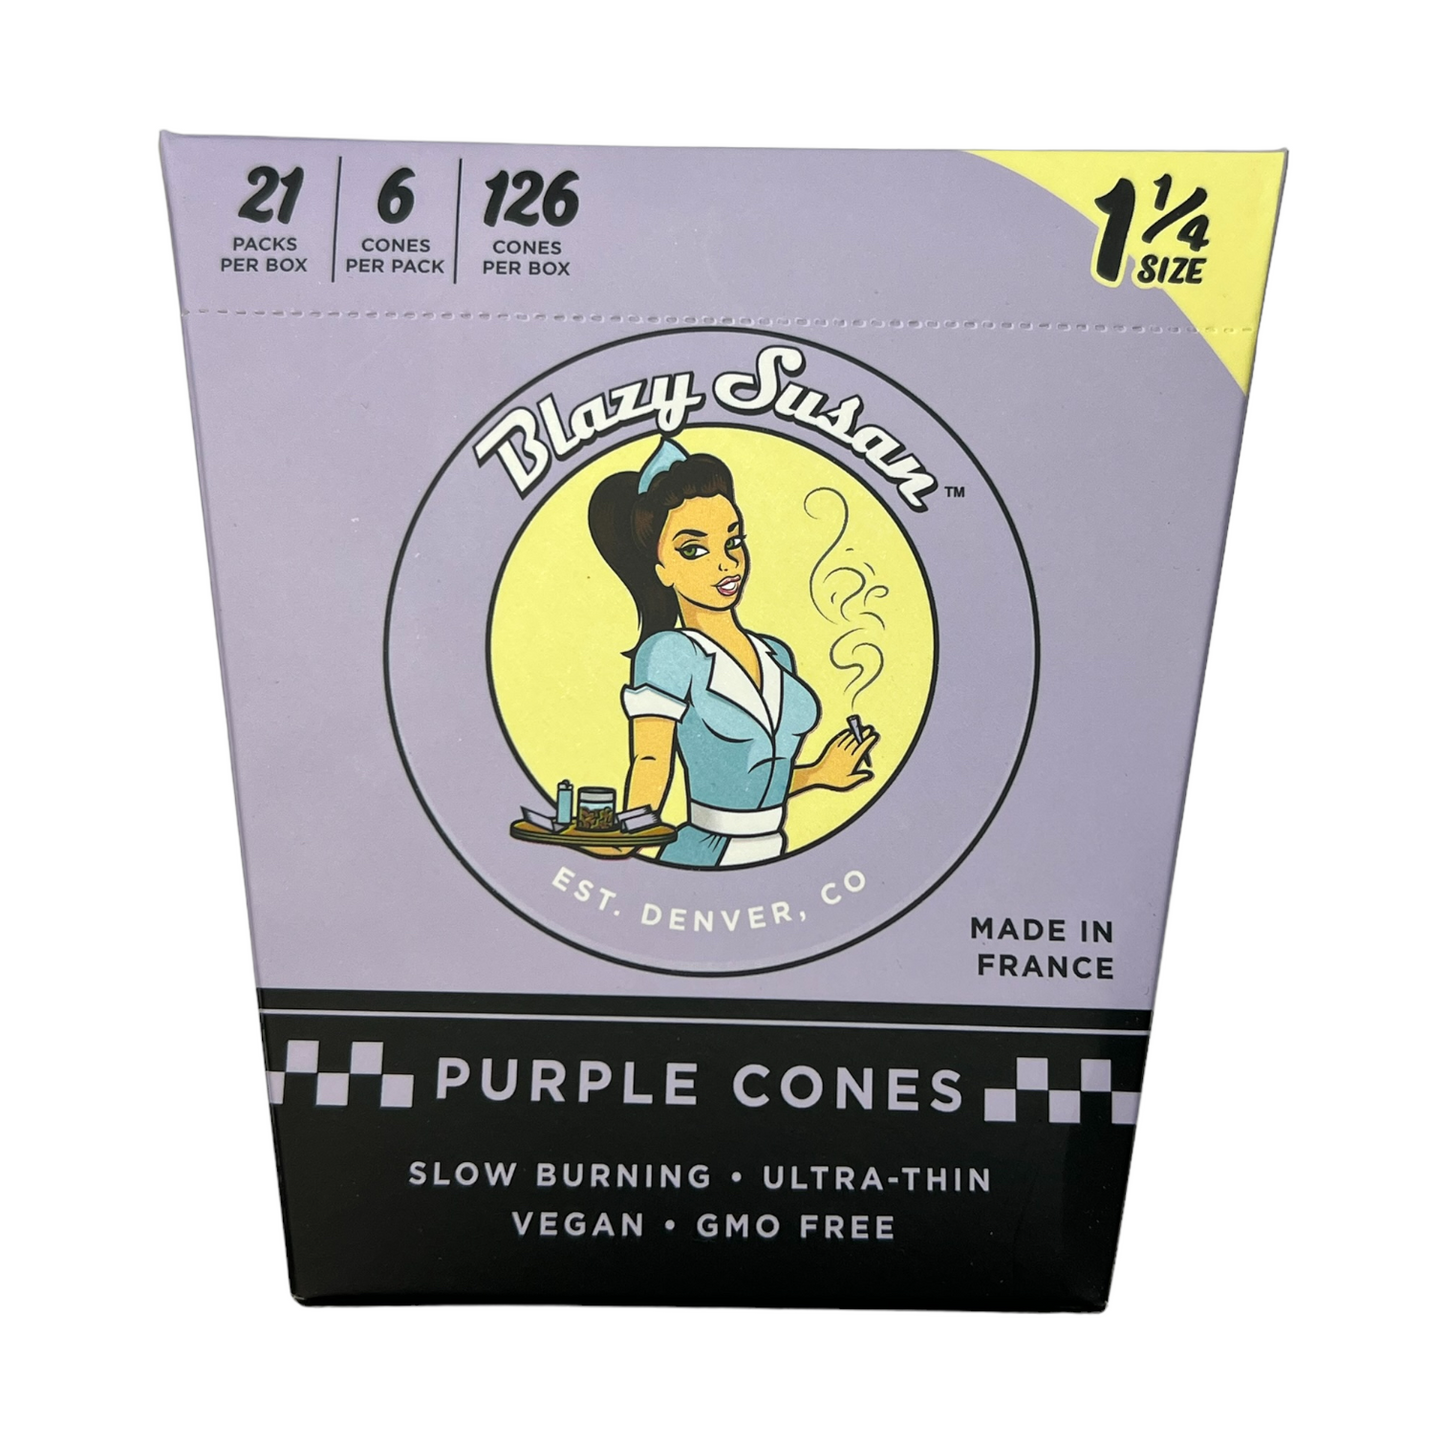 Blazy Susan - Purple Cones Display 1 ¼ Size